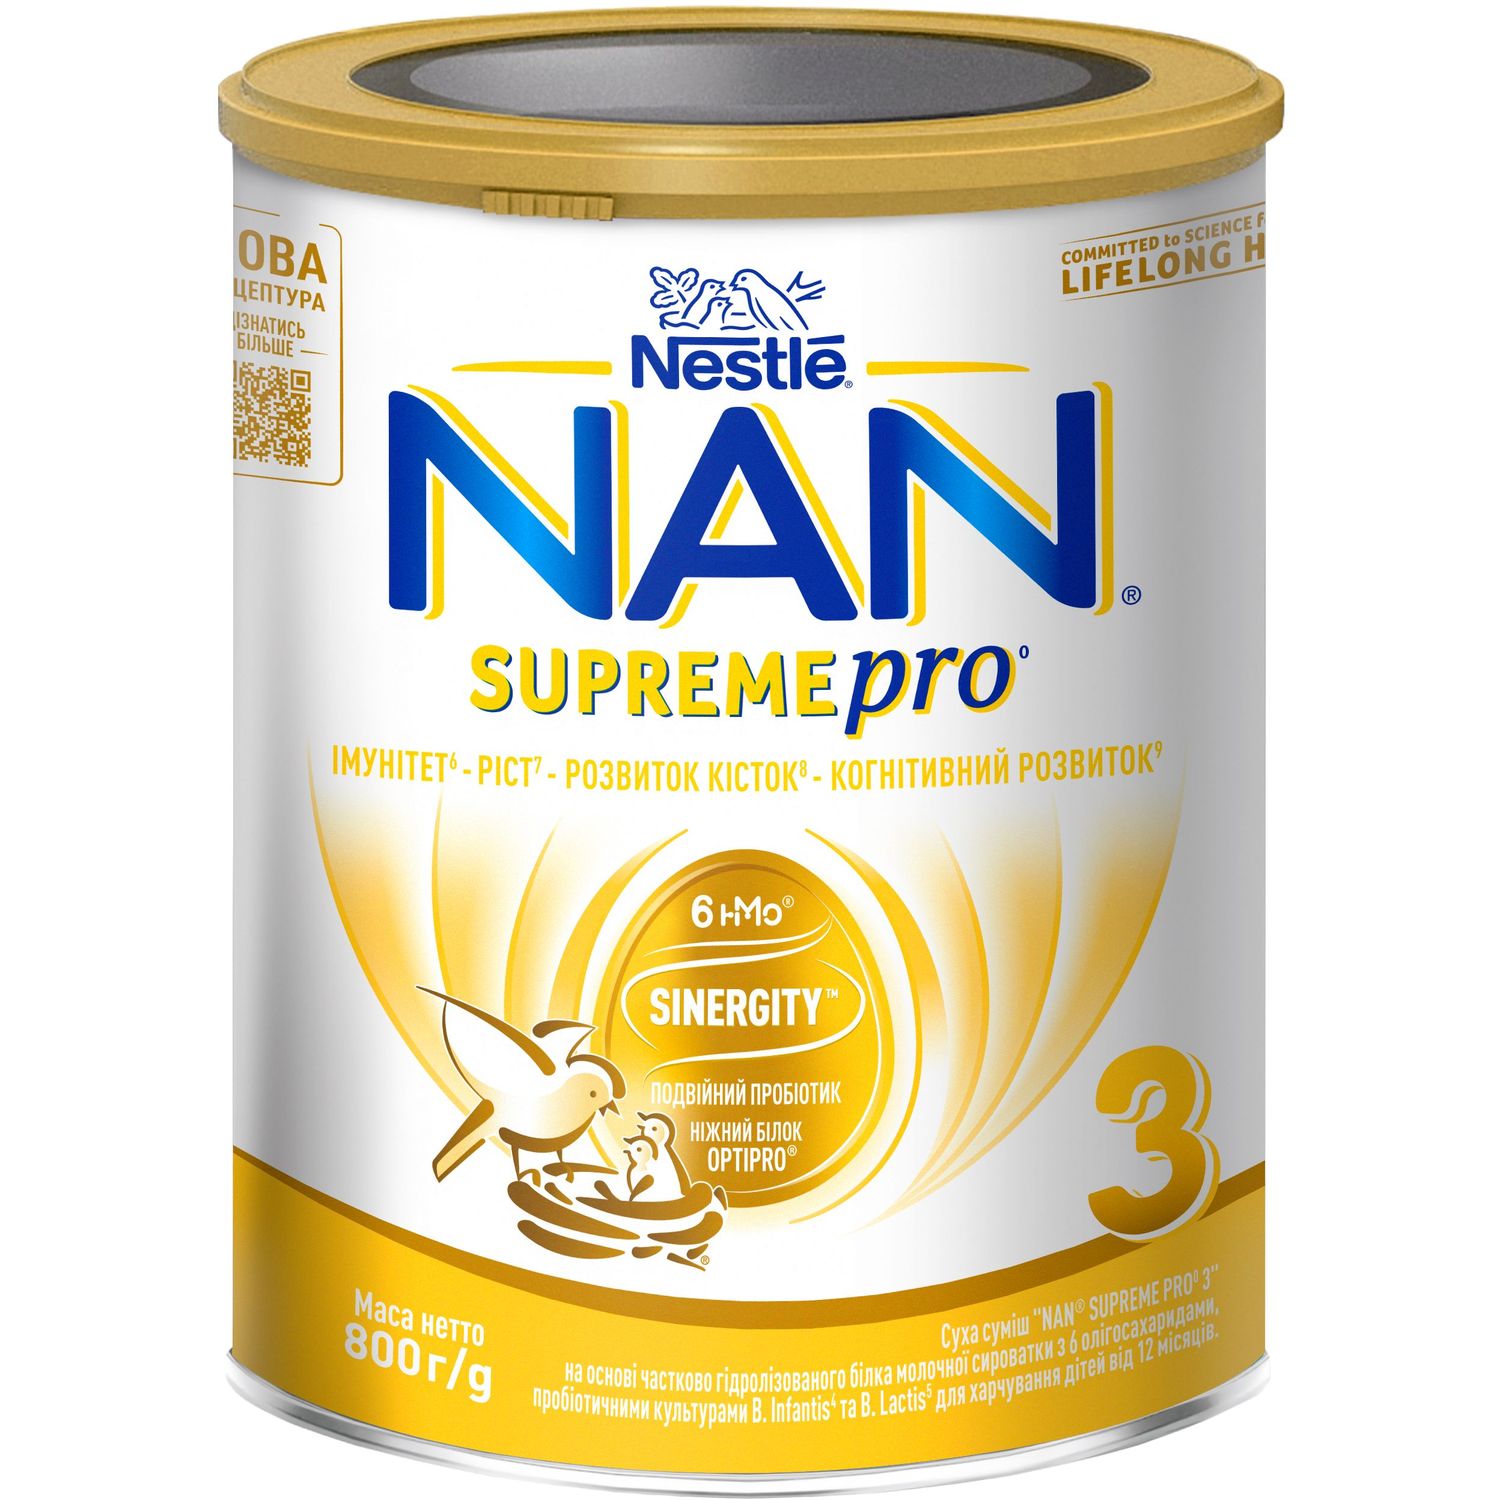 Суха суміш NAN 3 Supreme Pro з 6 олігосахаридами та подвійним пробіотиком для харчування дітей від 12 місяців 800 г - фото 1